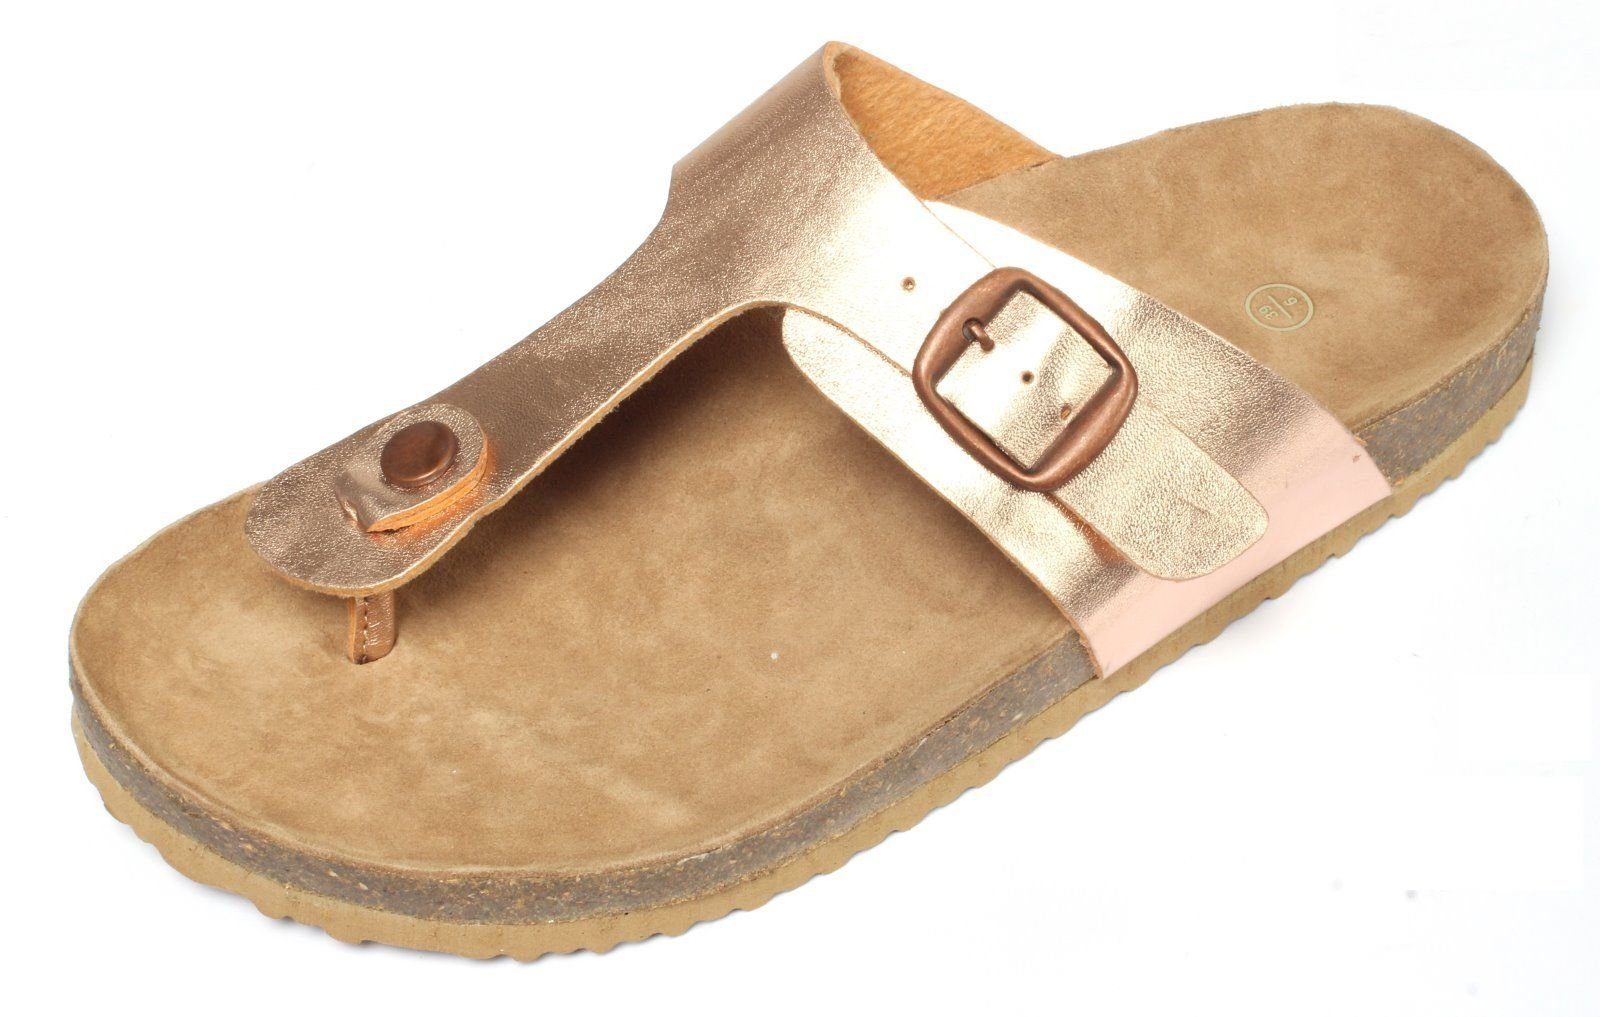 dynamic24 Zehentrenner Damen rose gold Pantoletten Sandalen Slipper Clogs  Sommer Schuhe Sandaletten online kaufen | OTTO